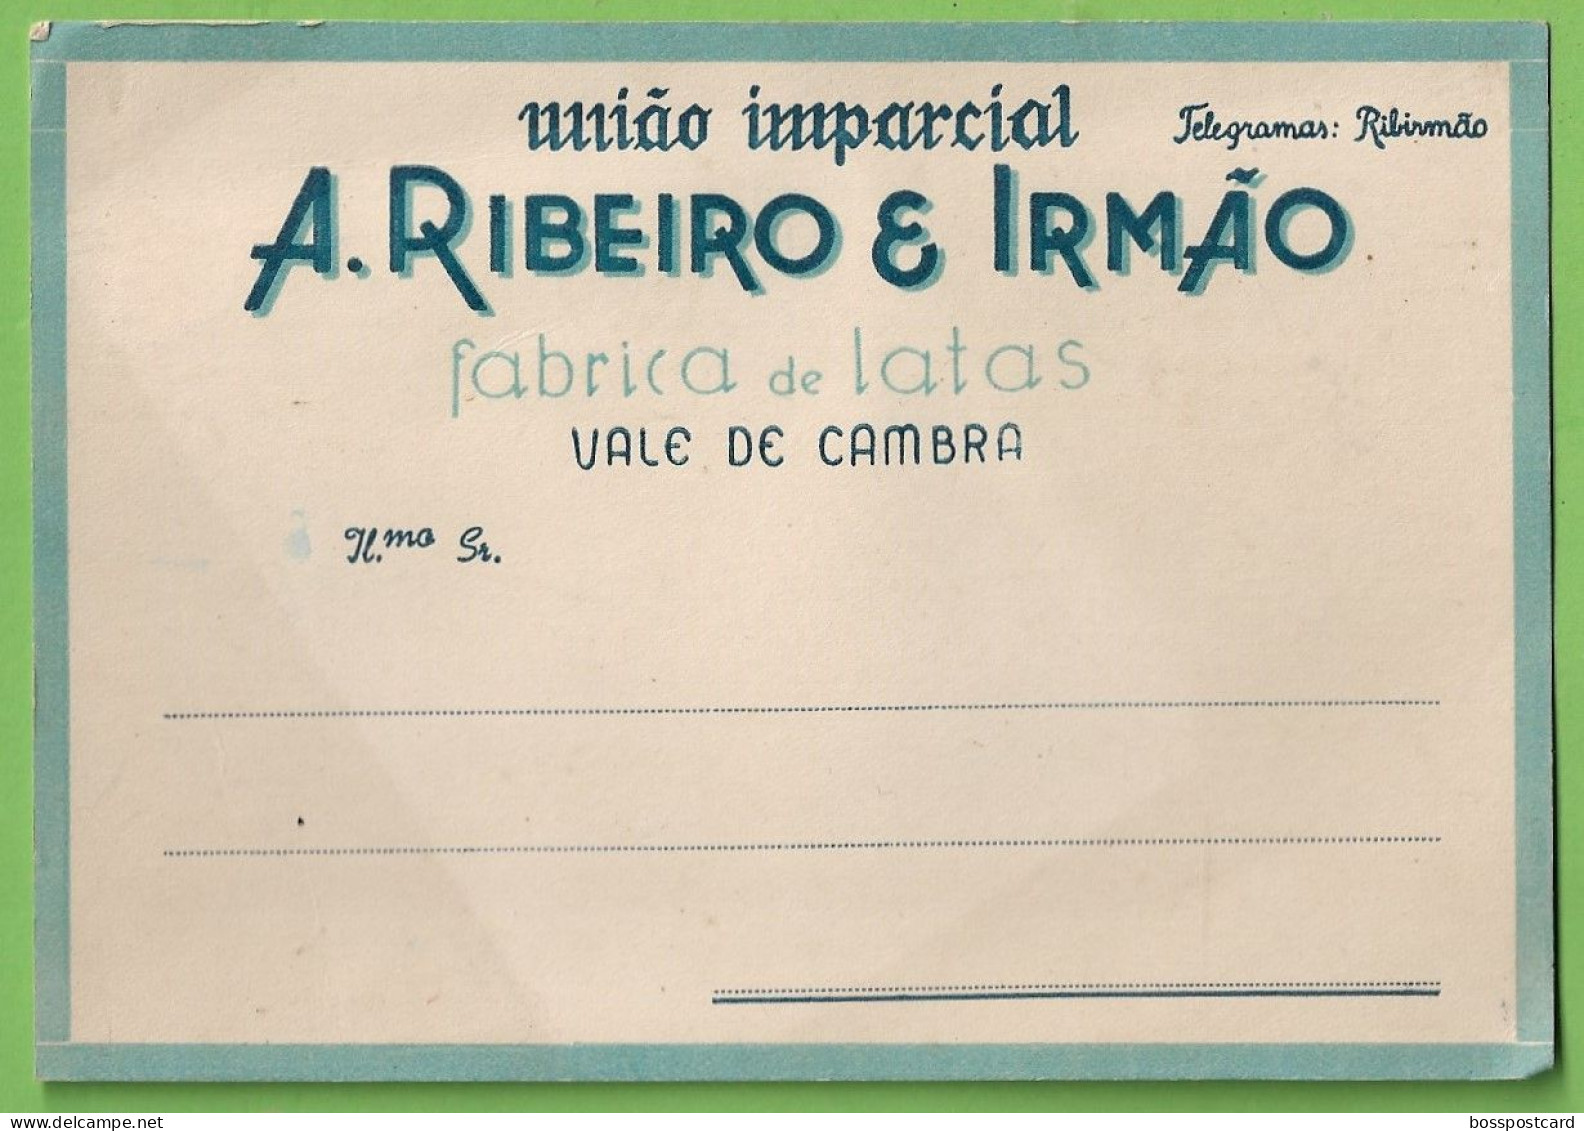 Vale De Cambra - Fábrica De Latas A. Ribeiro E Irmão - Comercial - Publicidade. Aveiro. Portugal. - Aveiro